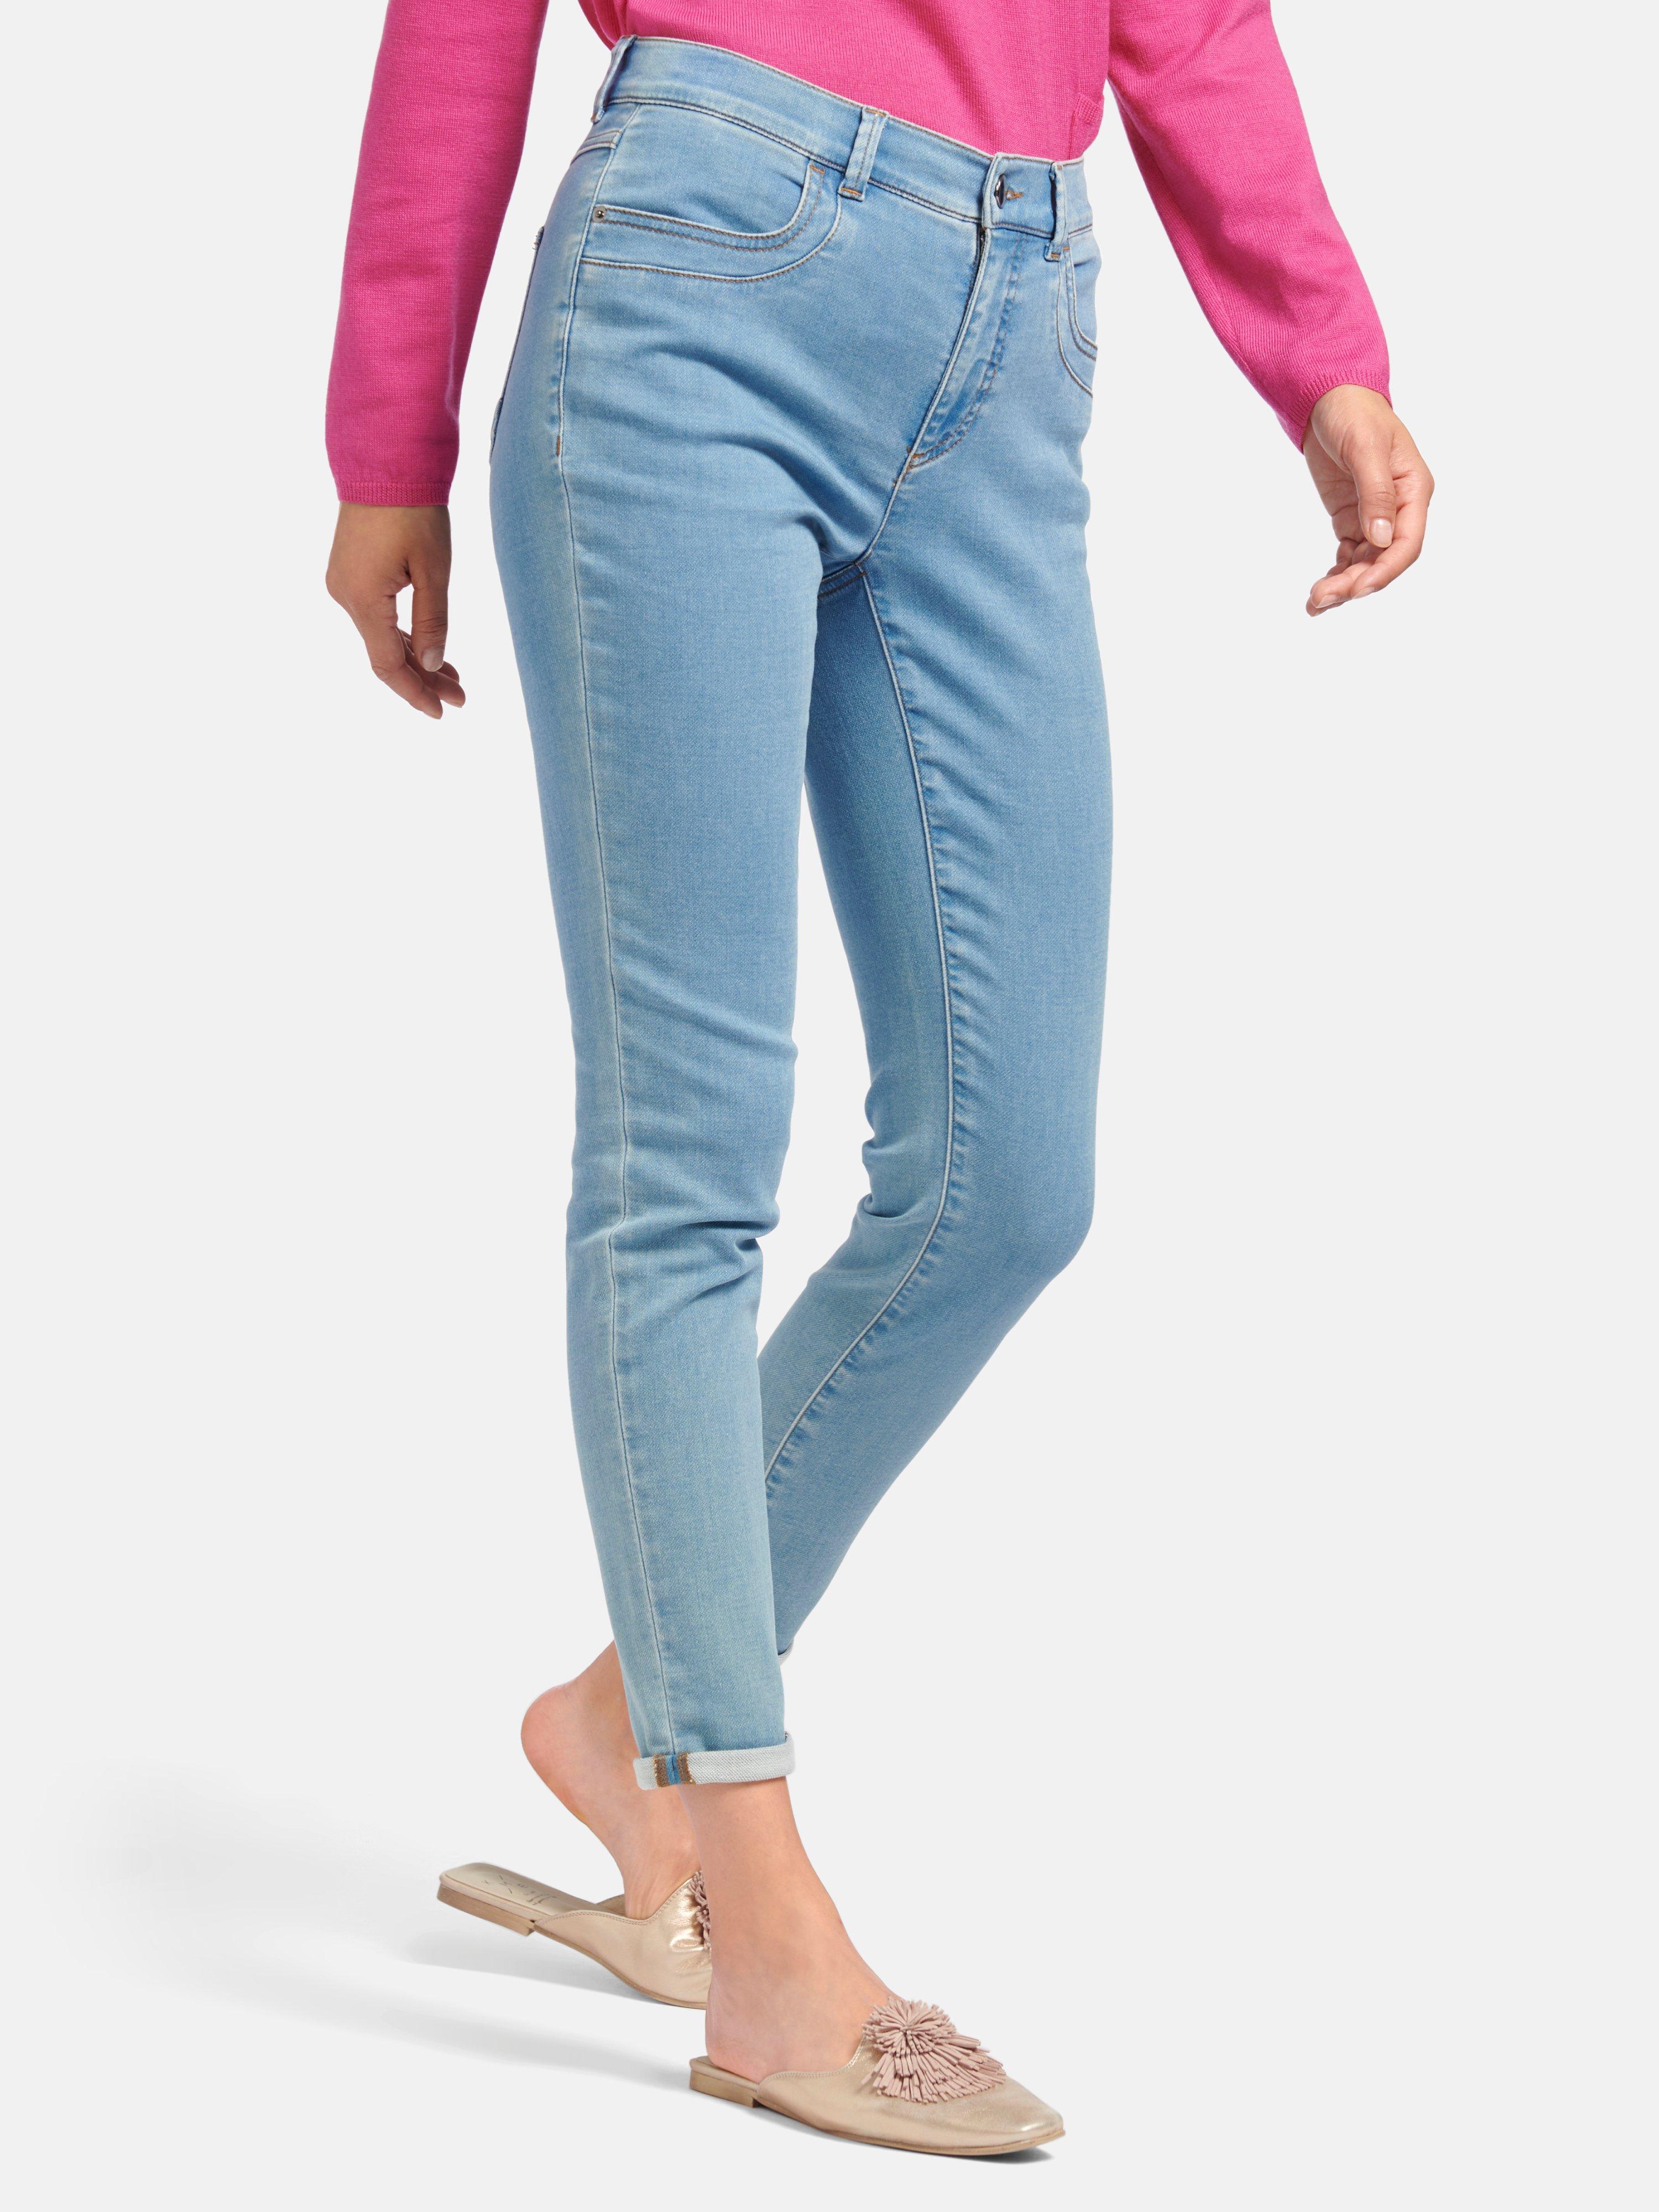 Peter Hahn - Jeans model Sylvia in 4-pocketsmodel